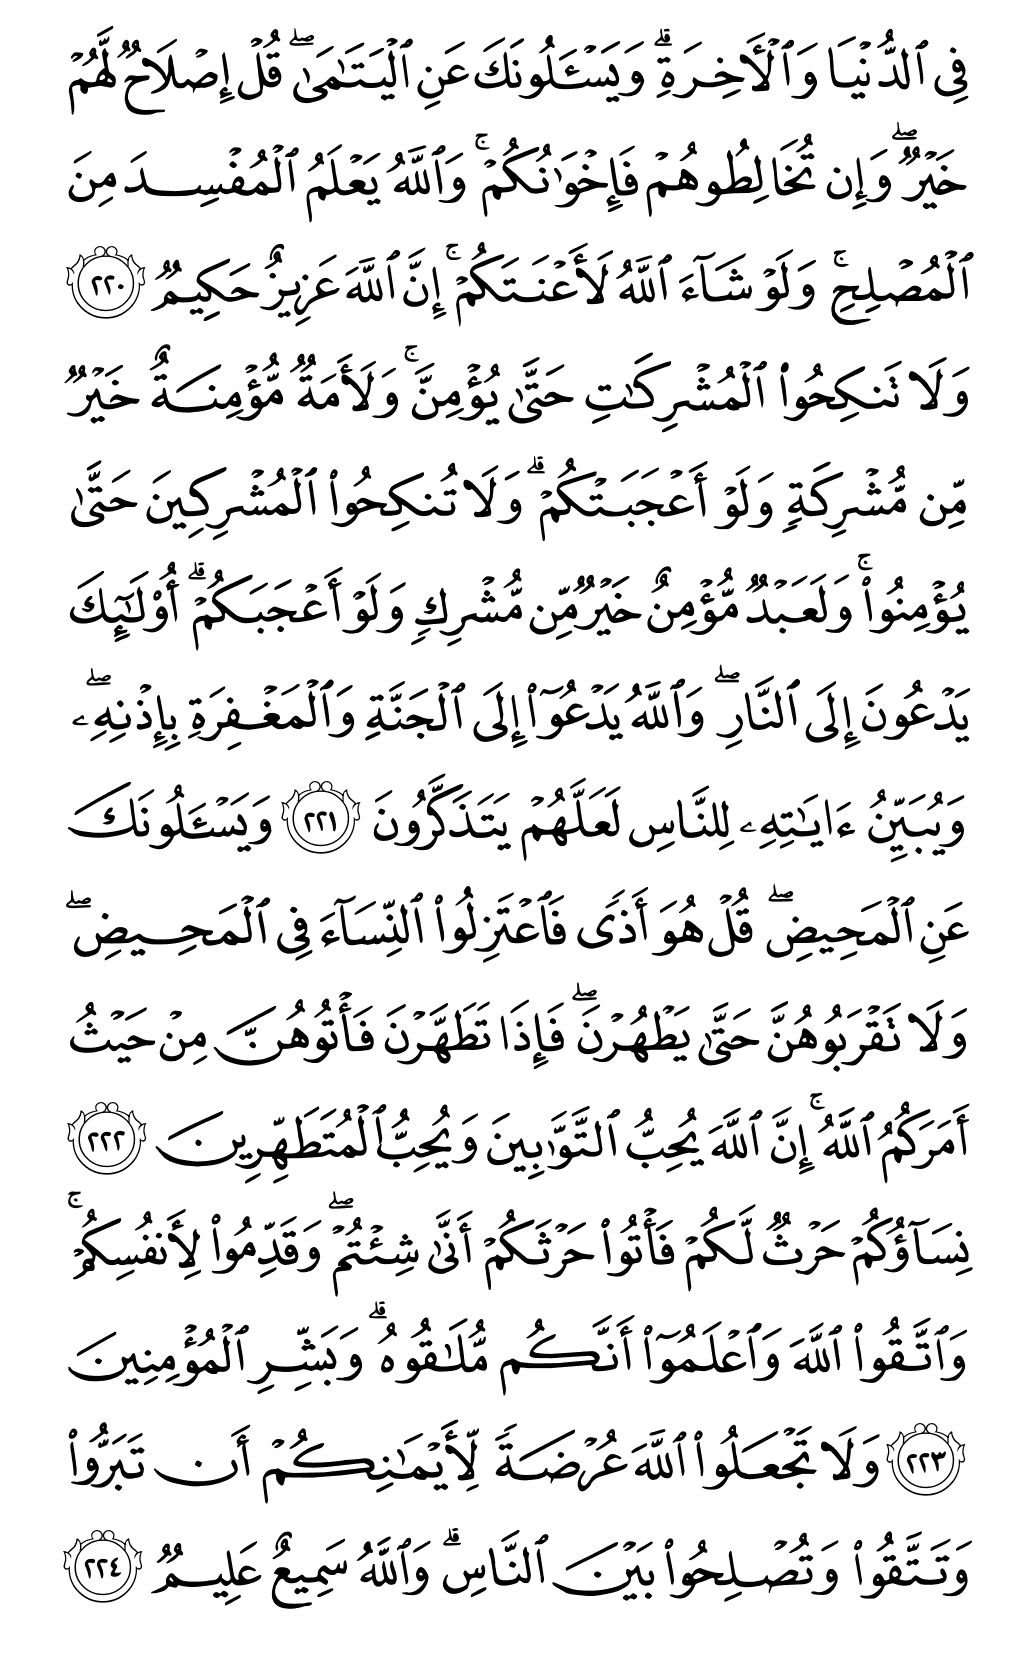 الصفحة رقم 35 من القرآن الكريم